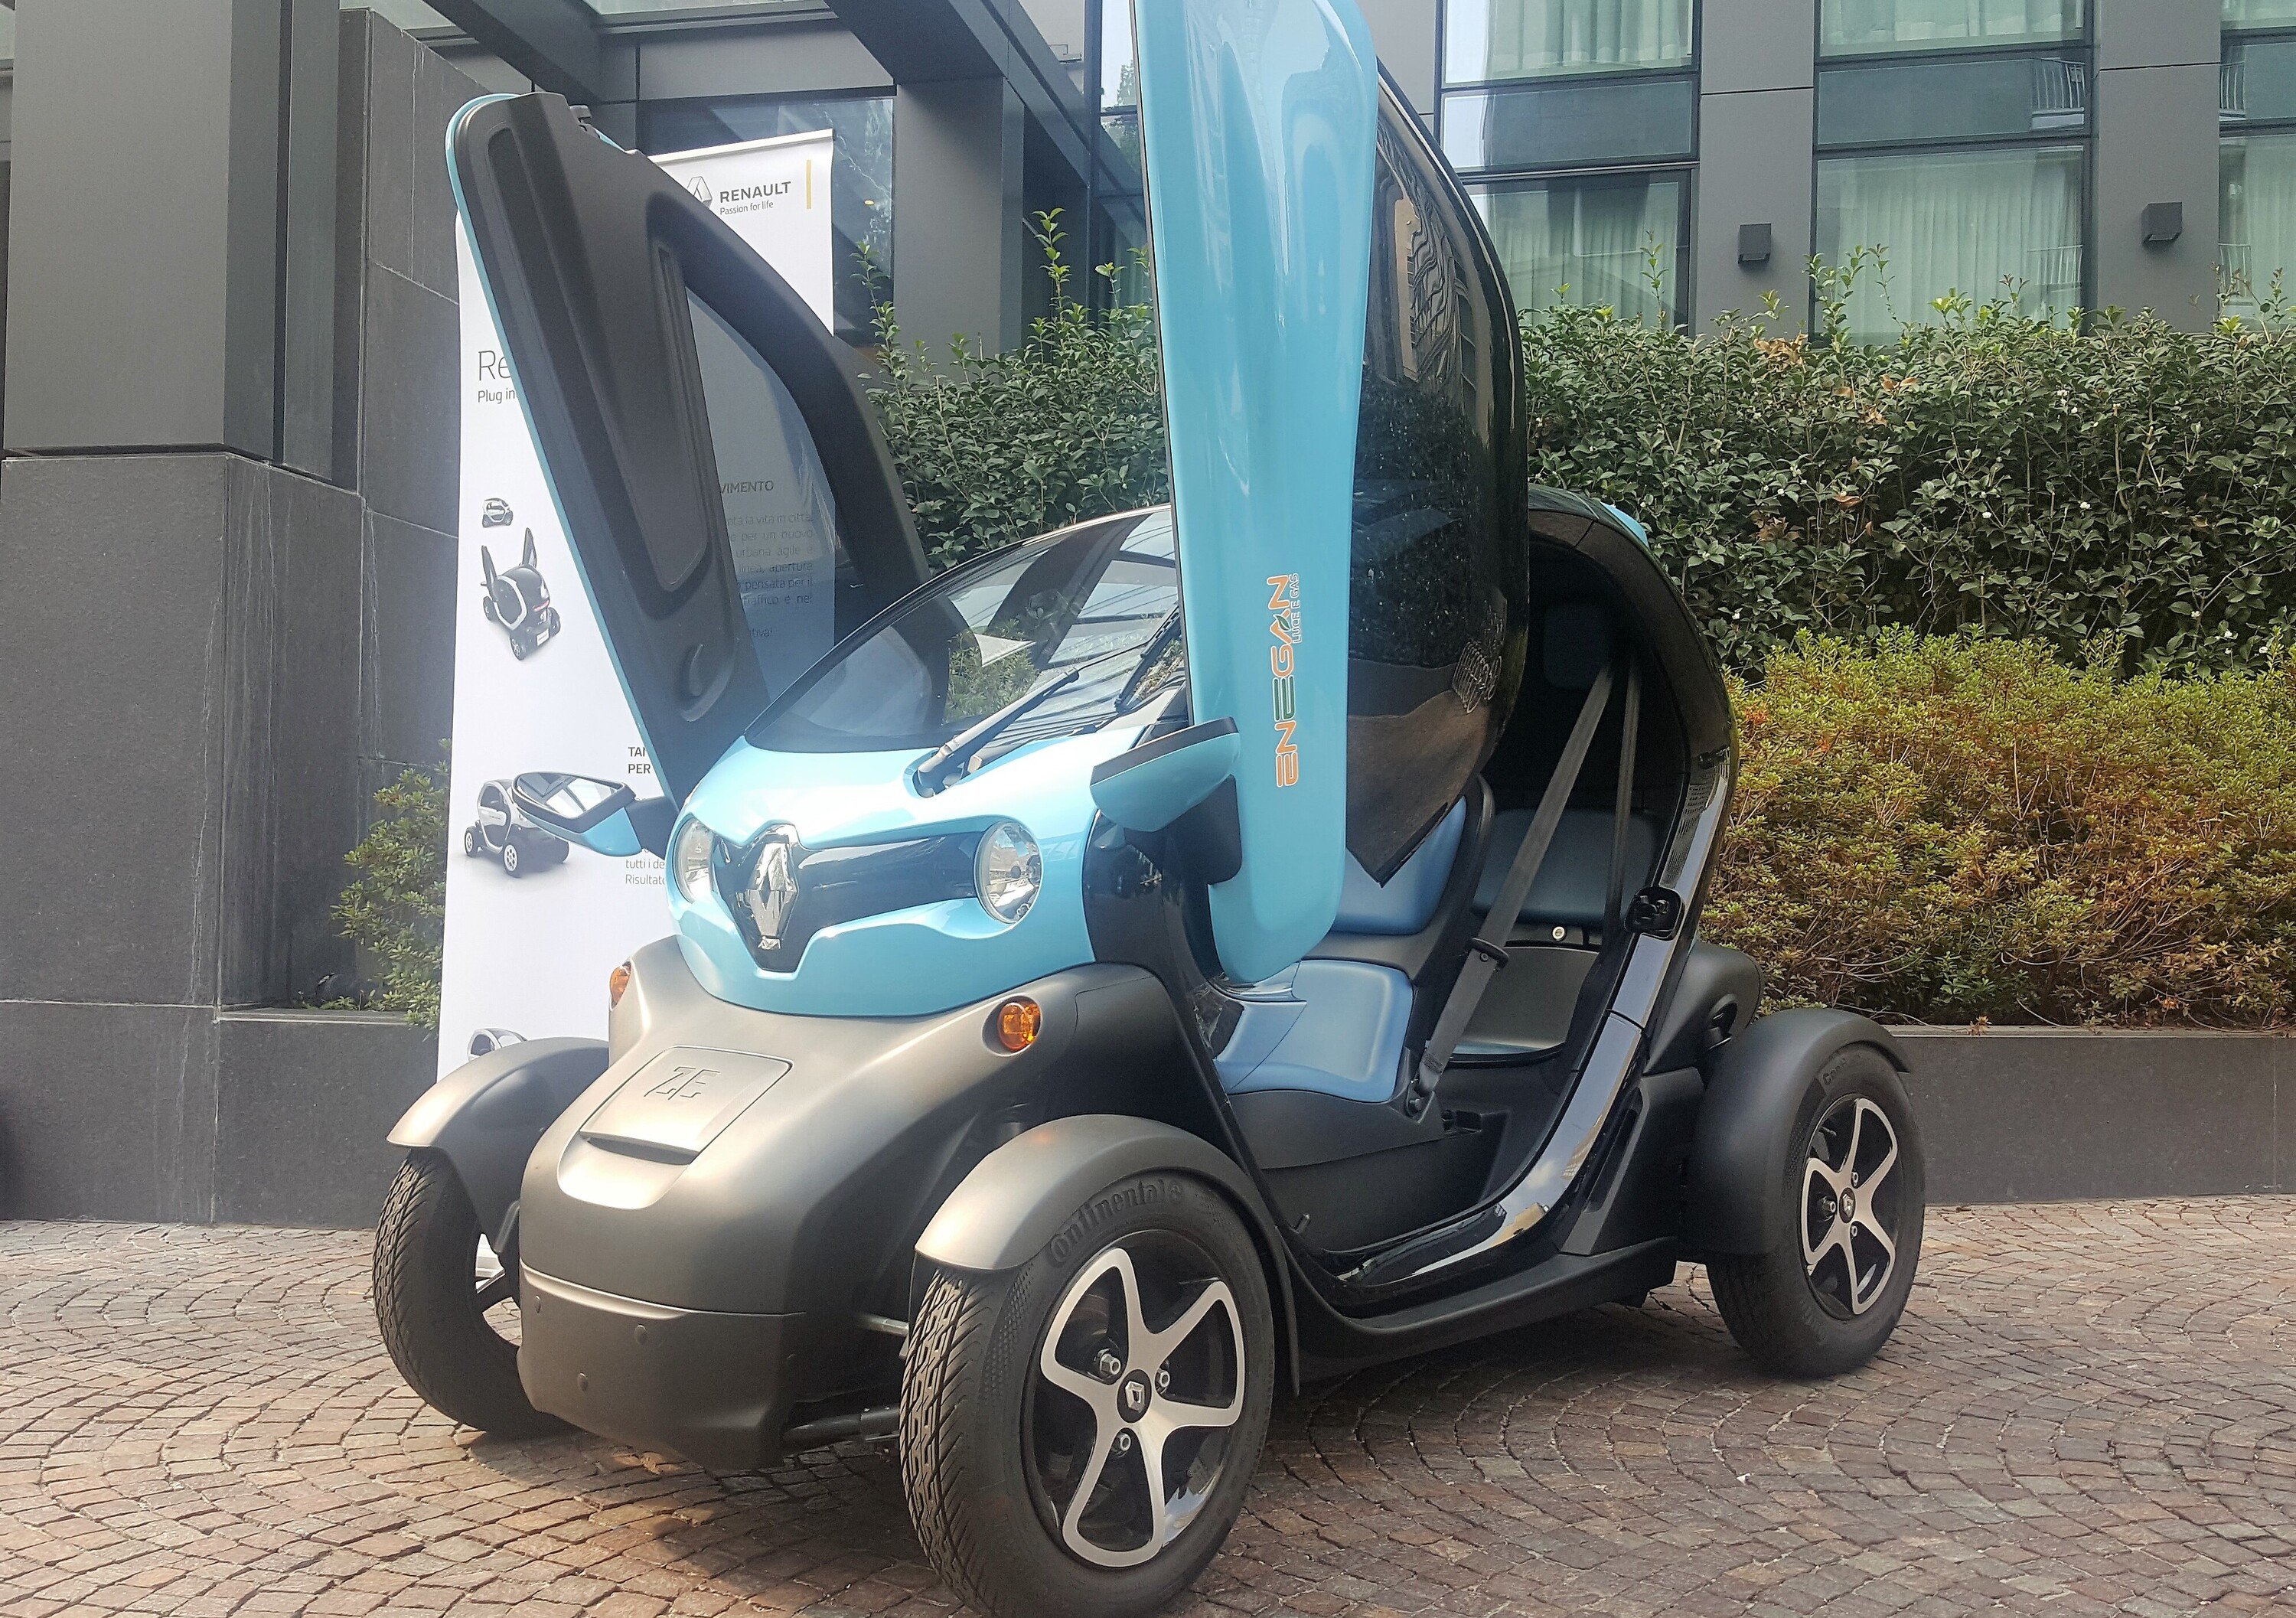 Enegan con Renault Twizy per un pacchetto fornitura energia e mobilit&agrave; 100% green